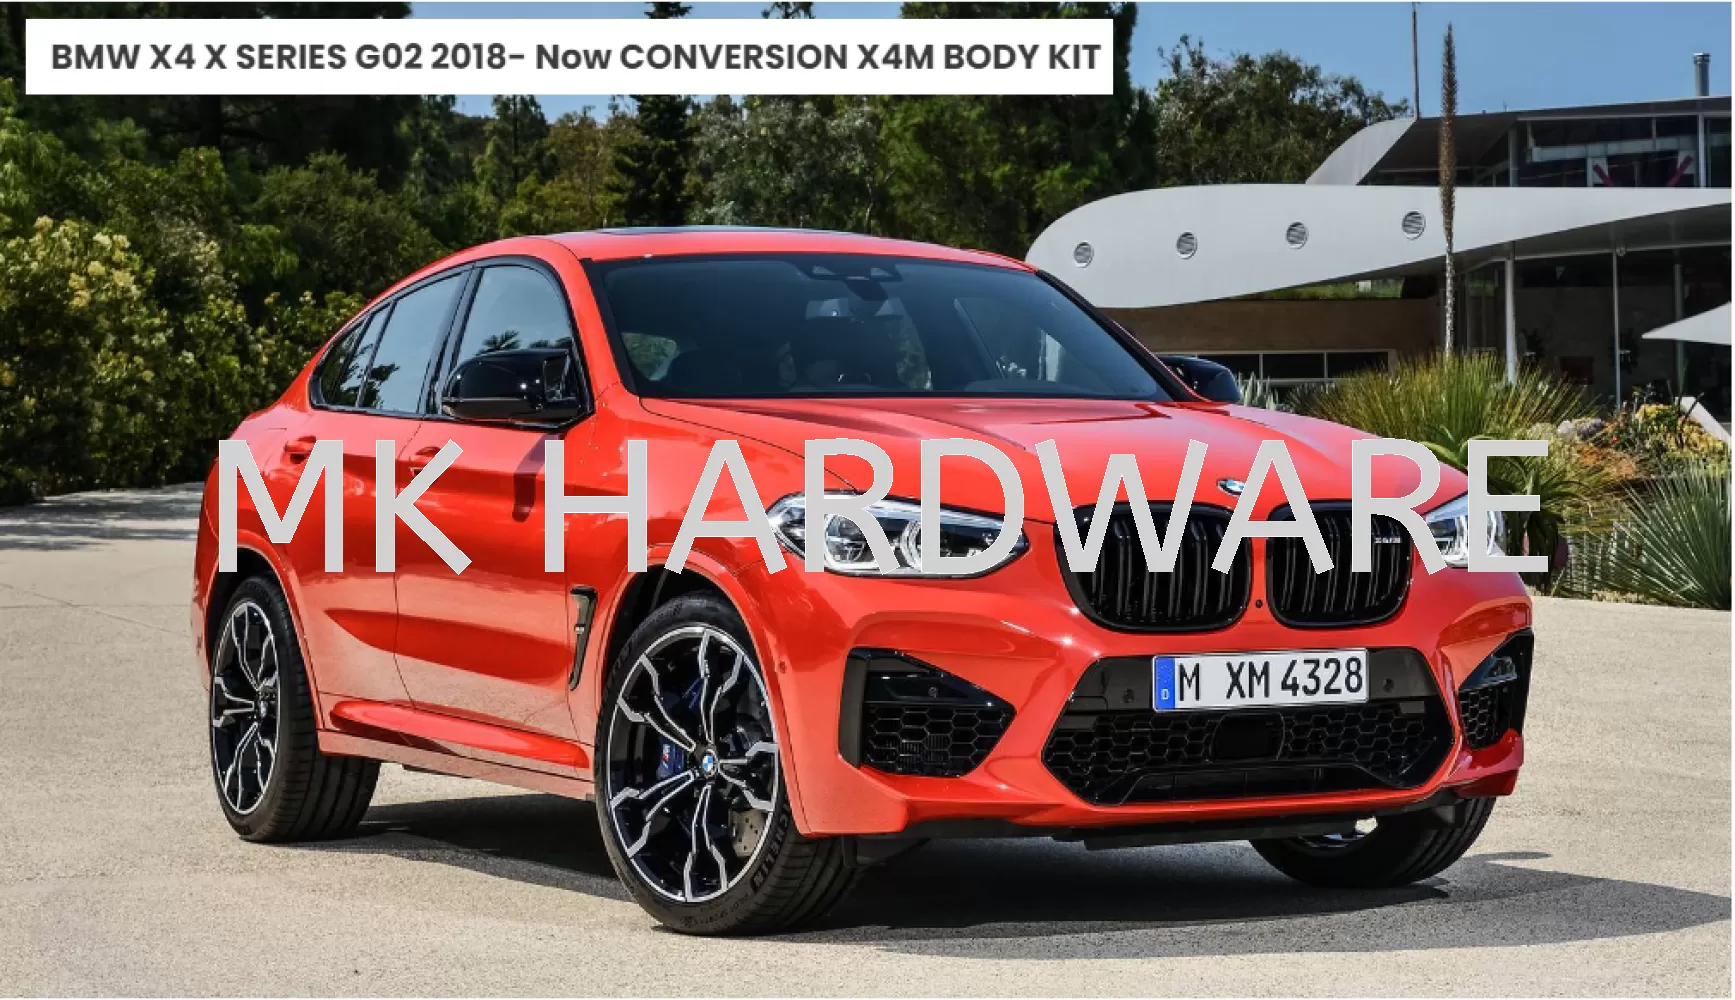 BMW X4 X SERIES G02 2018- Now CONVERSION X4M BODY KIT